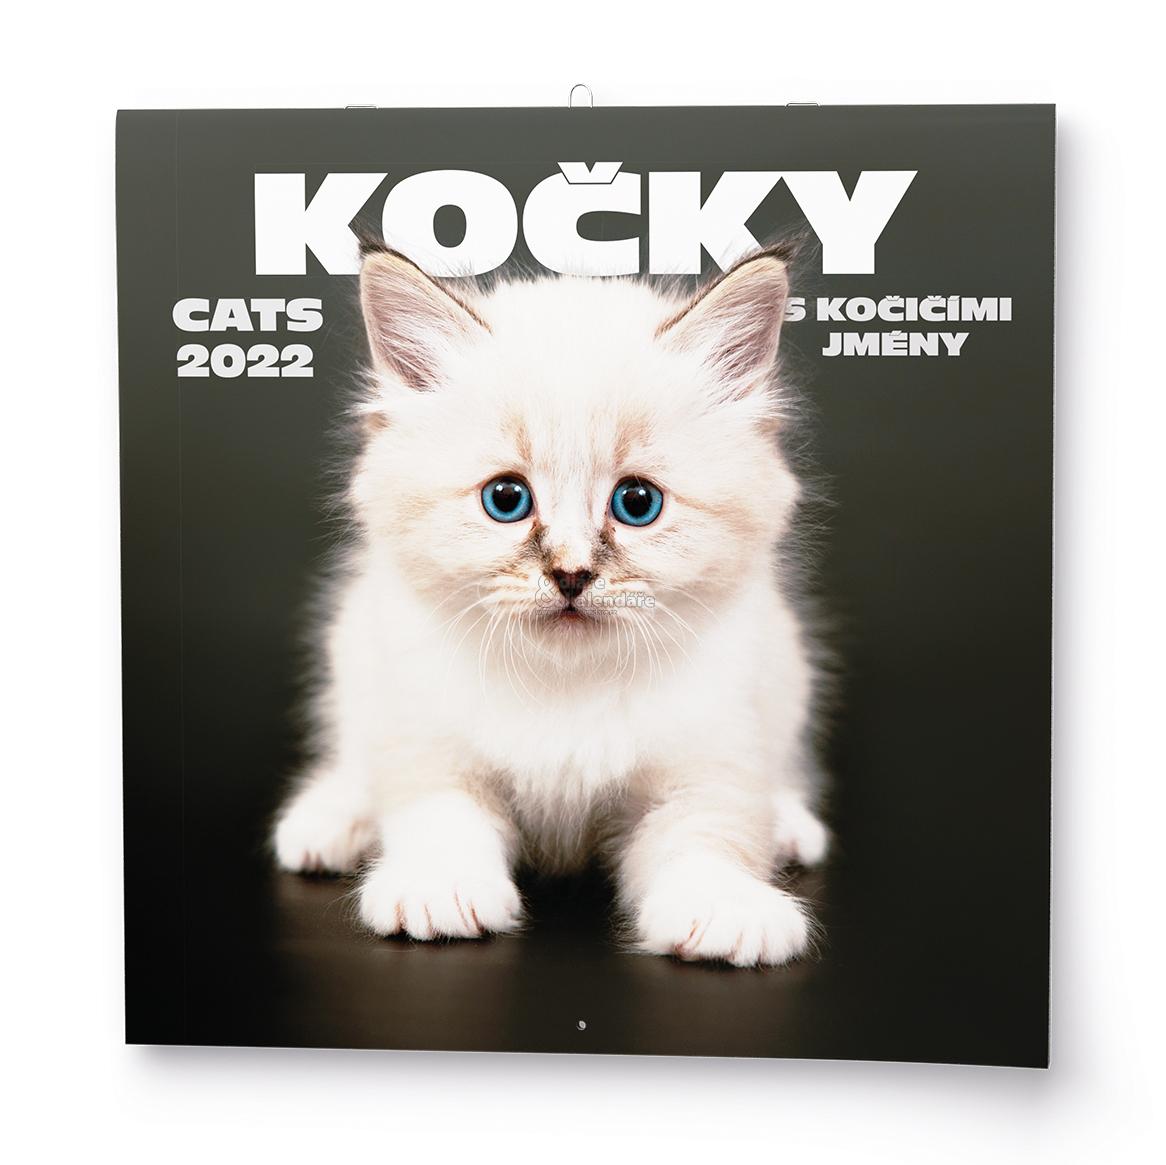 Kočky, nástěnný poznámkový kalendář, 2022